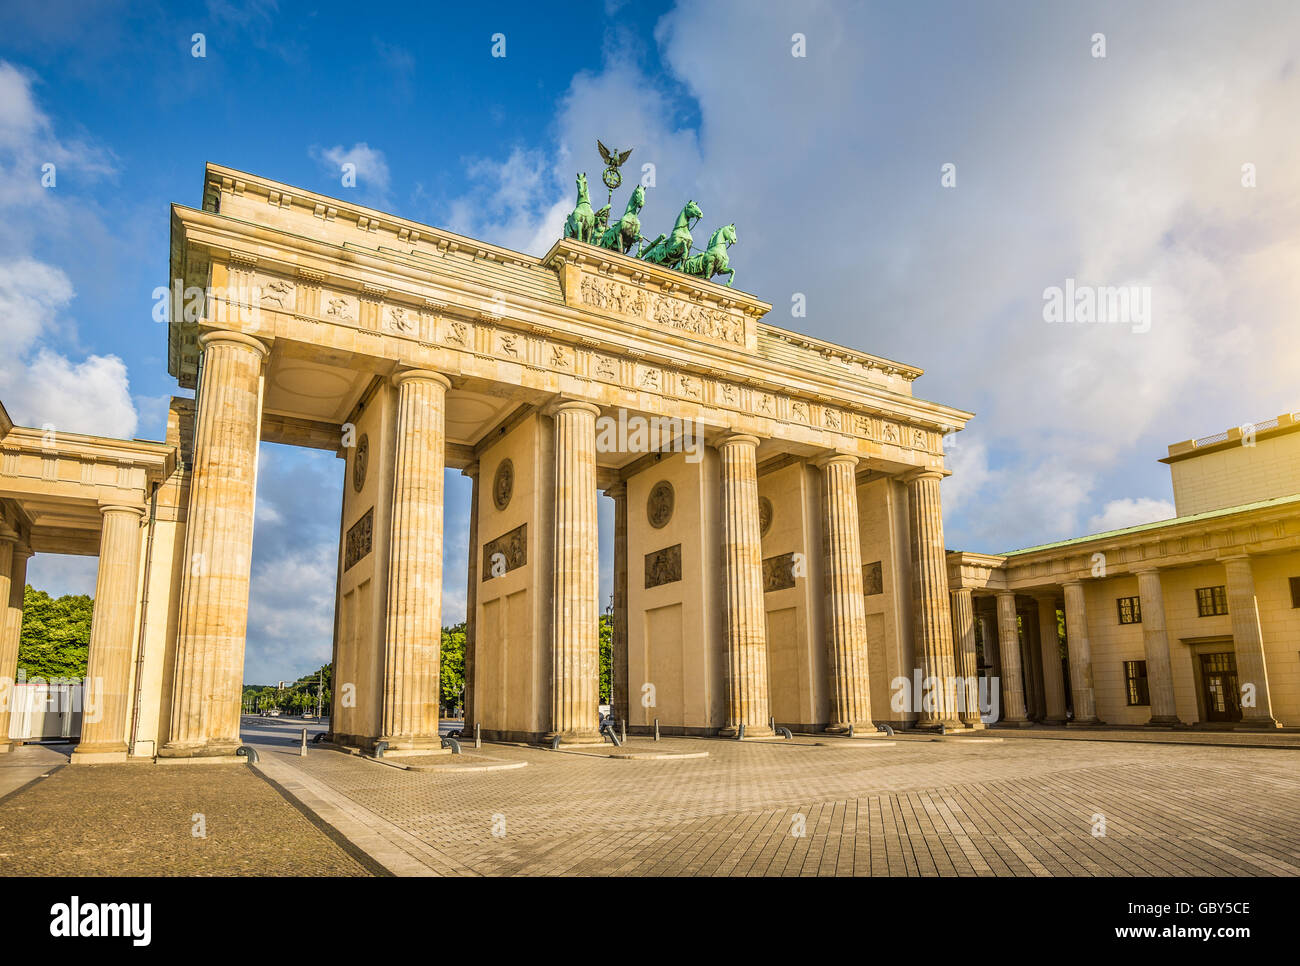 Visualizzazione classica della famosa Porta di Brandeburgo a beautiful Golden. La luce del mattino con cielo blu e nuvole, Berlino, Germania Foto Stock